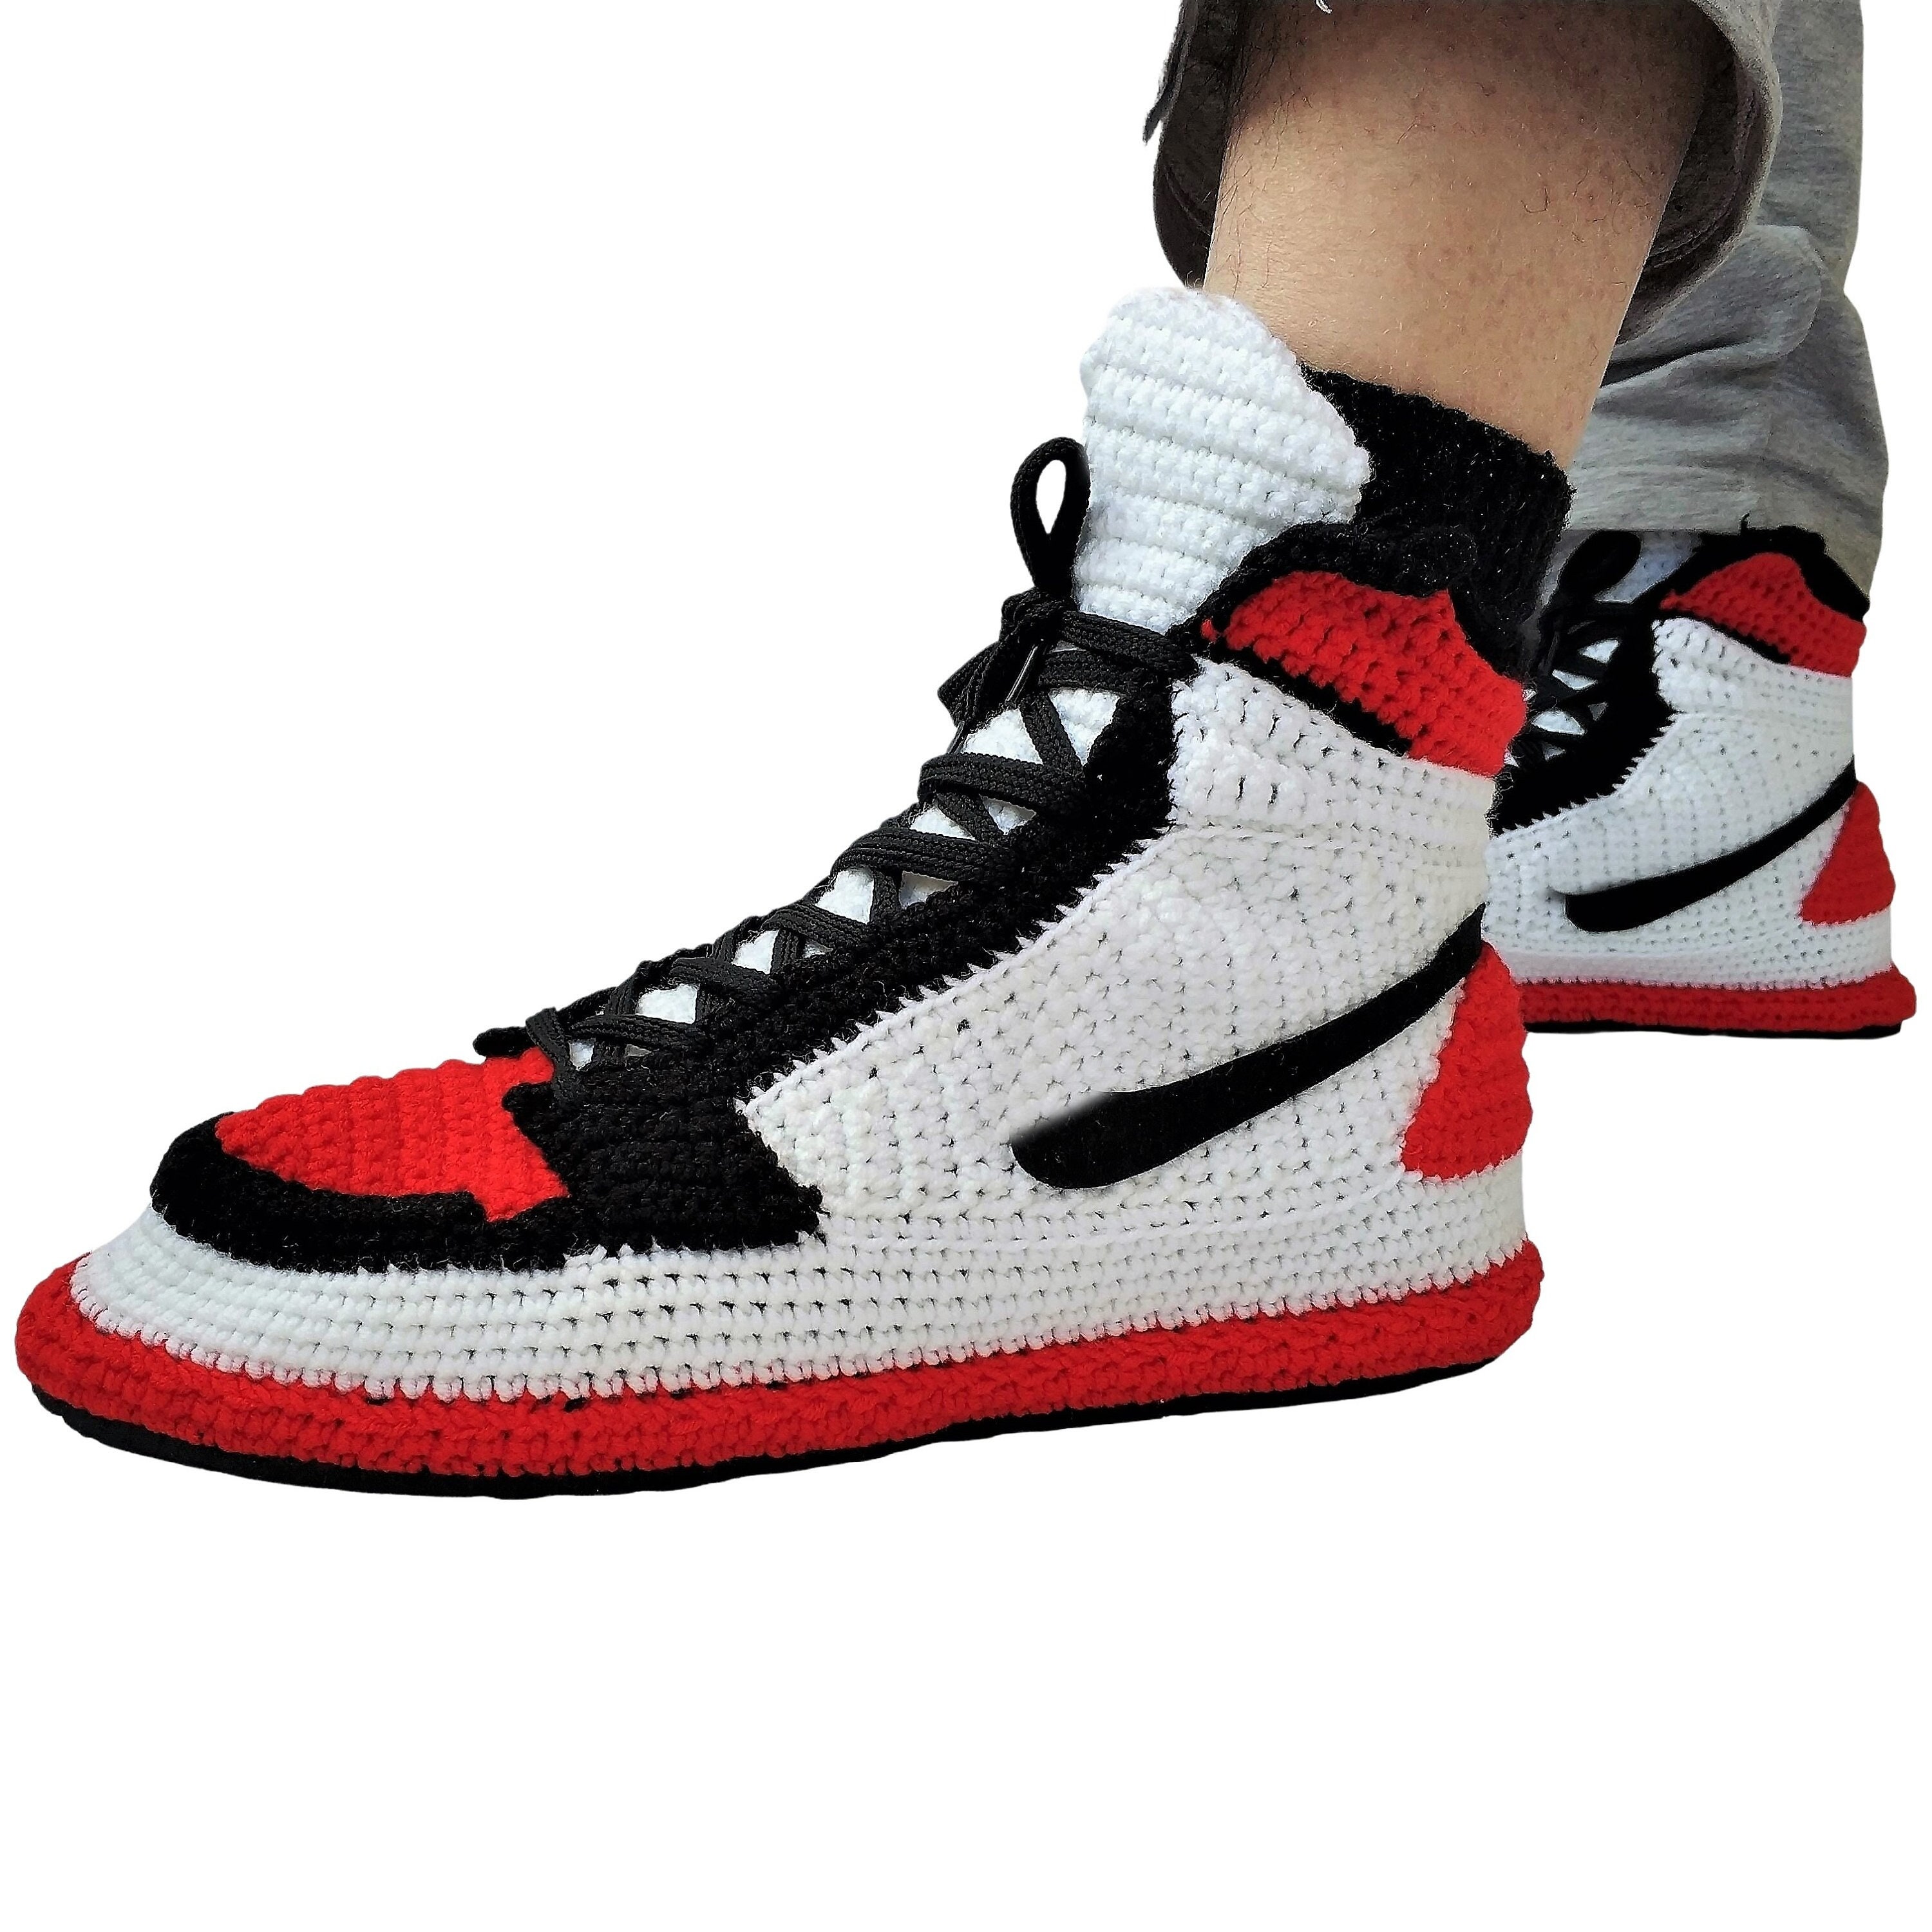 Jordans Toe Retro Sneaker Handmade Slippers Plush Banned - Etsy